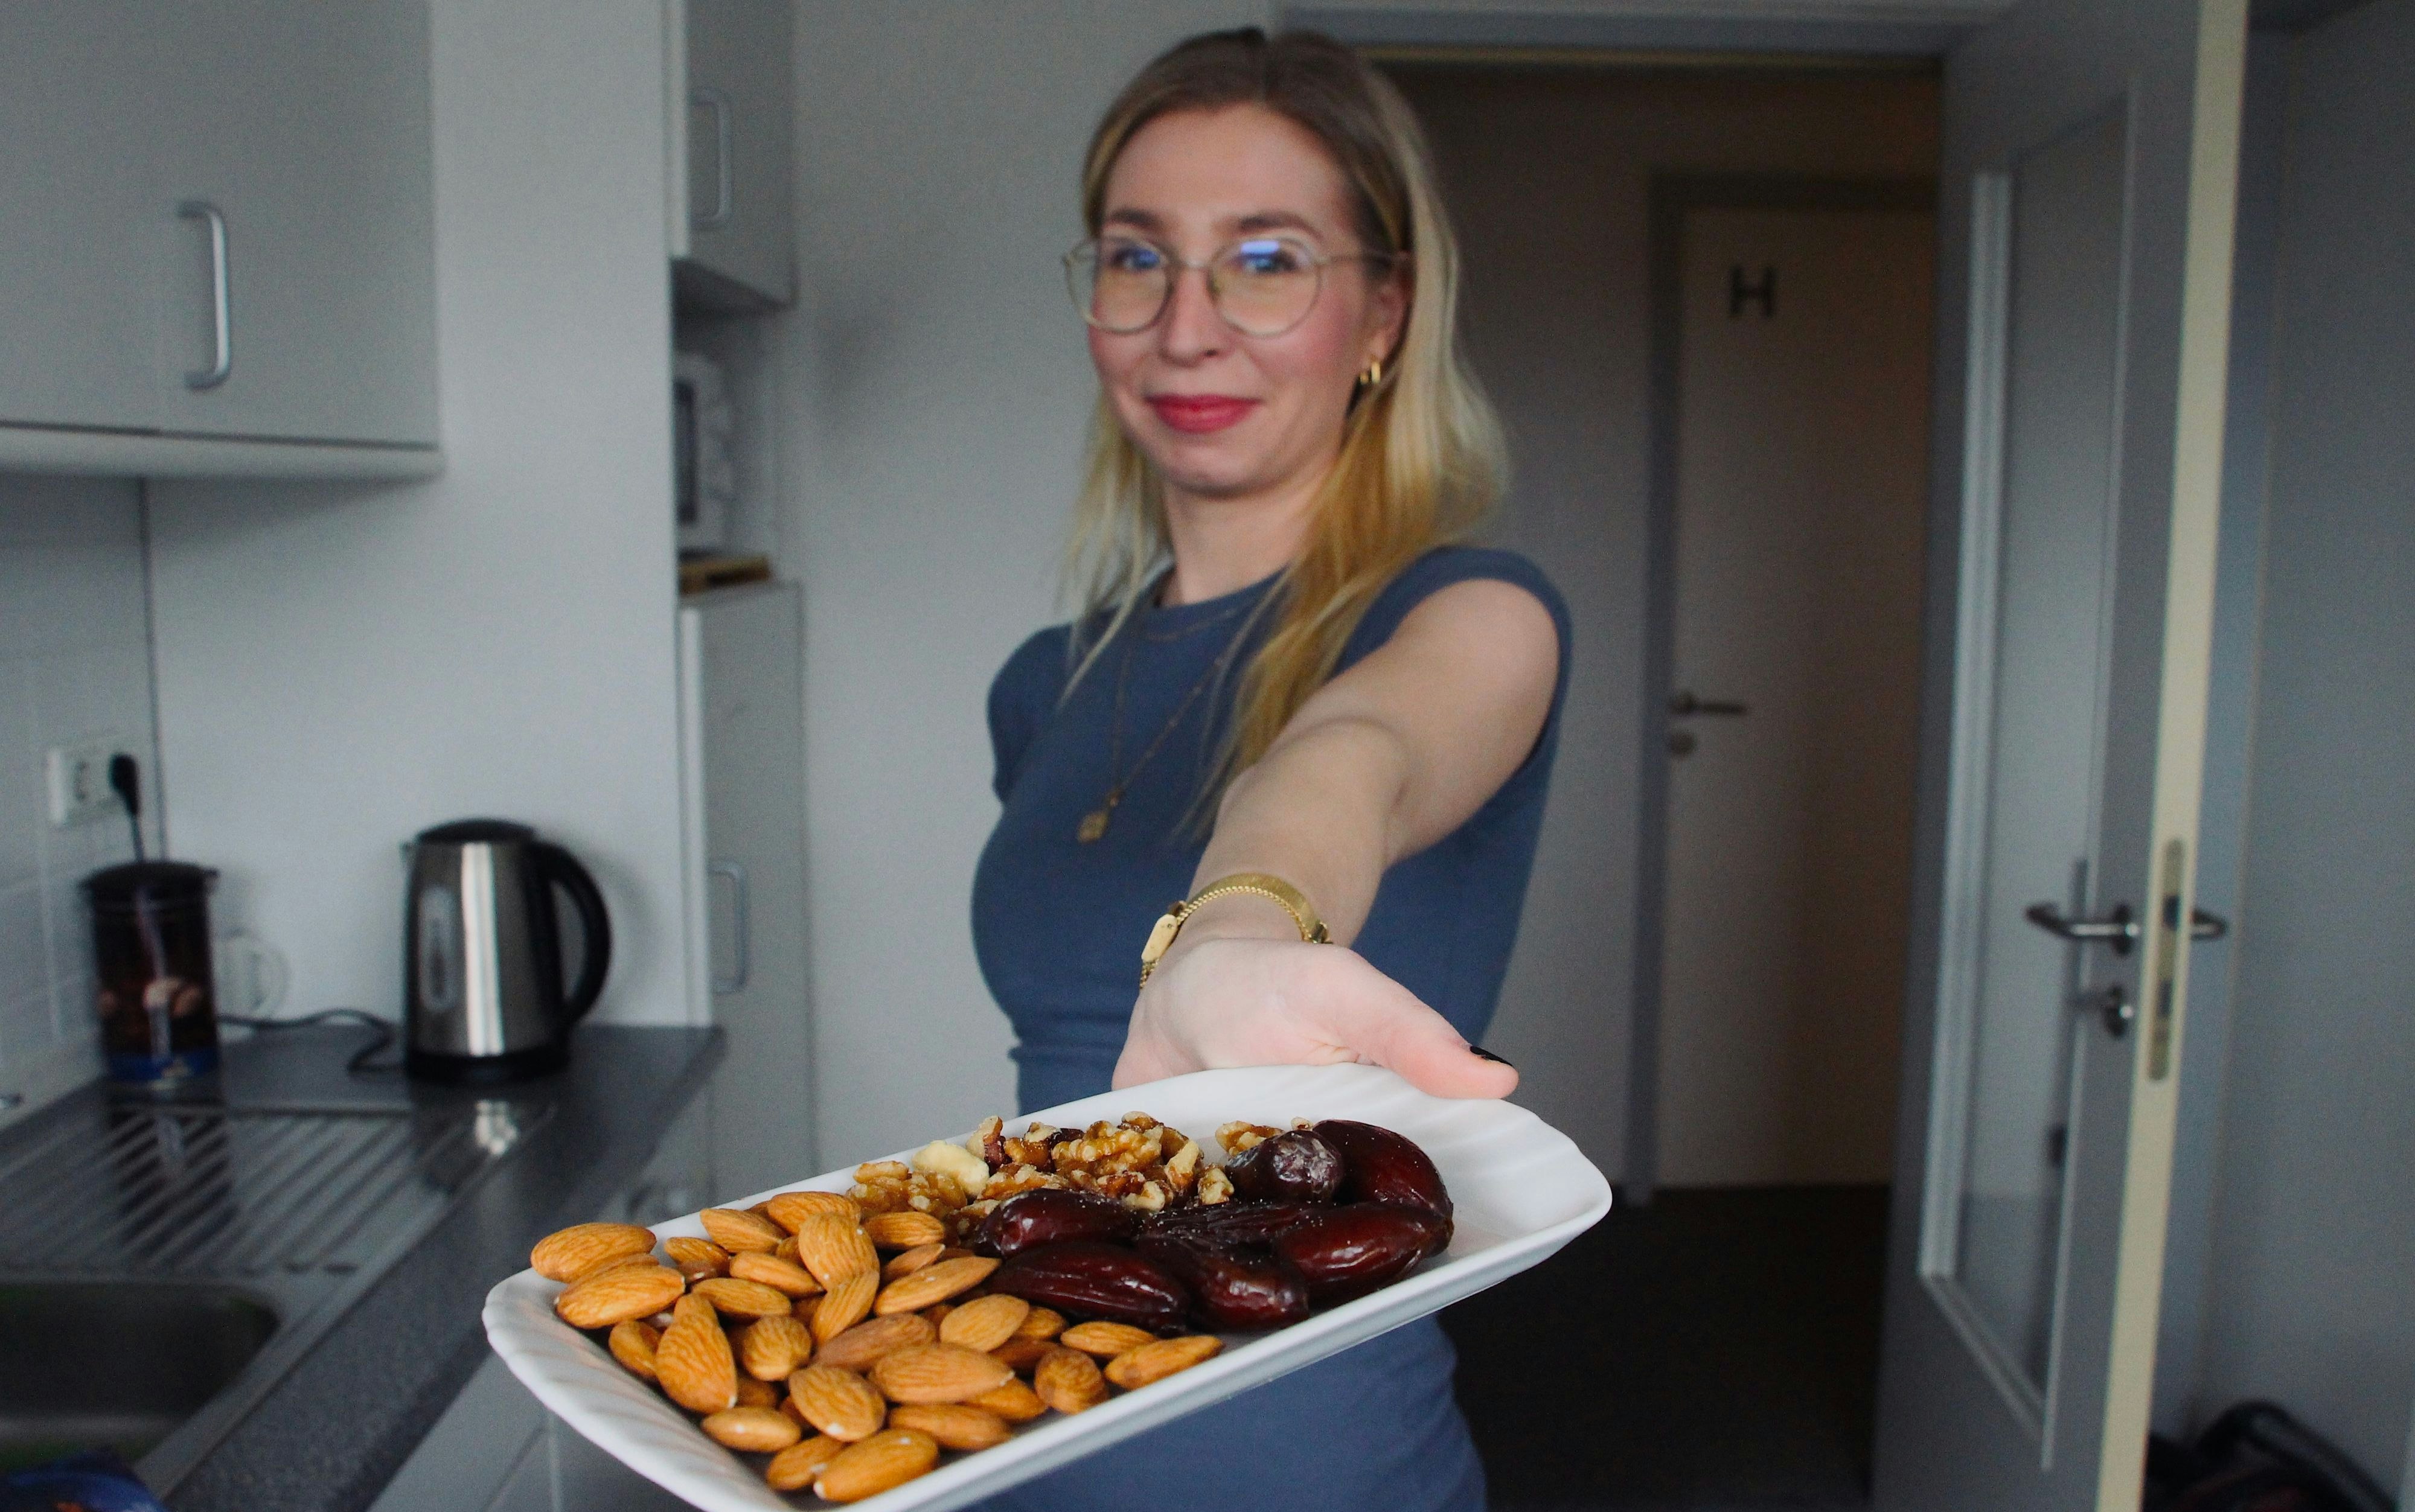 Gesunde Snacks für zwischendurch: Mandeln, Datteln und Walnüsse. Foto: E. Wenzel